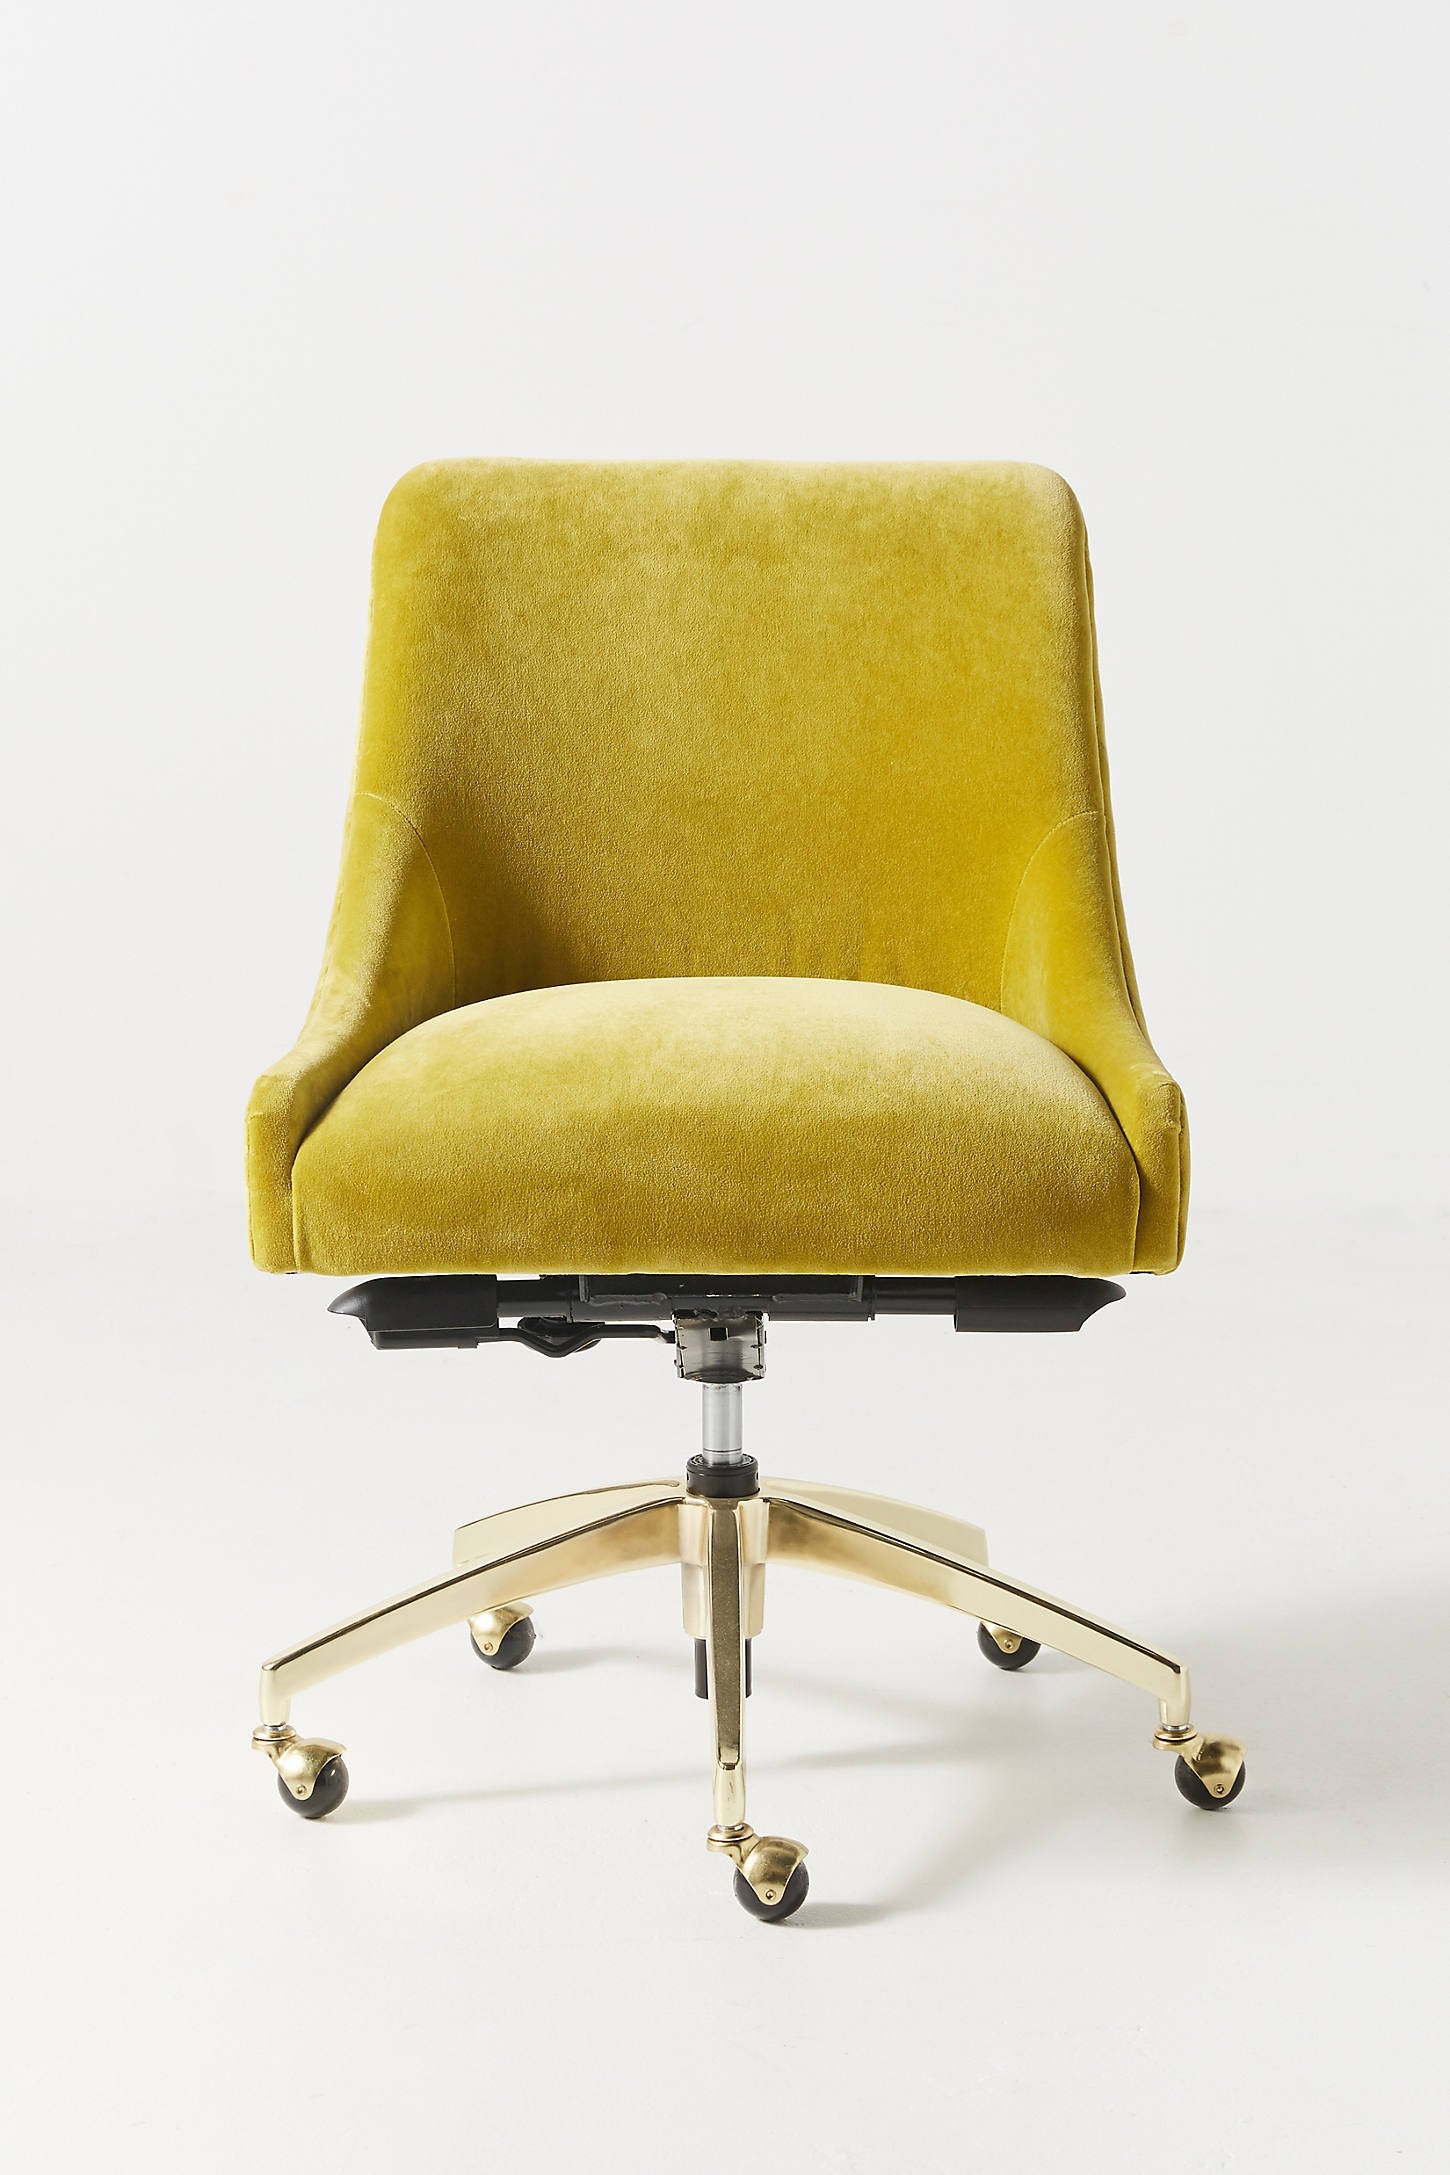 Elowen Swivel Desk Chair - Image 0